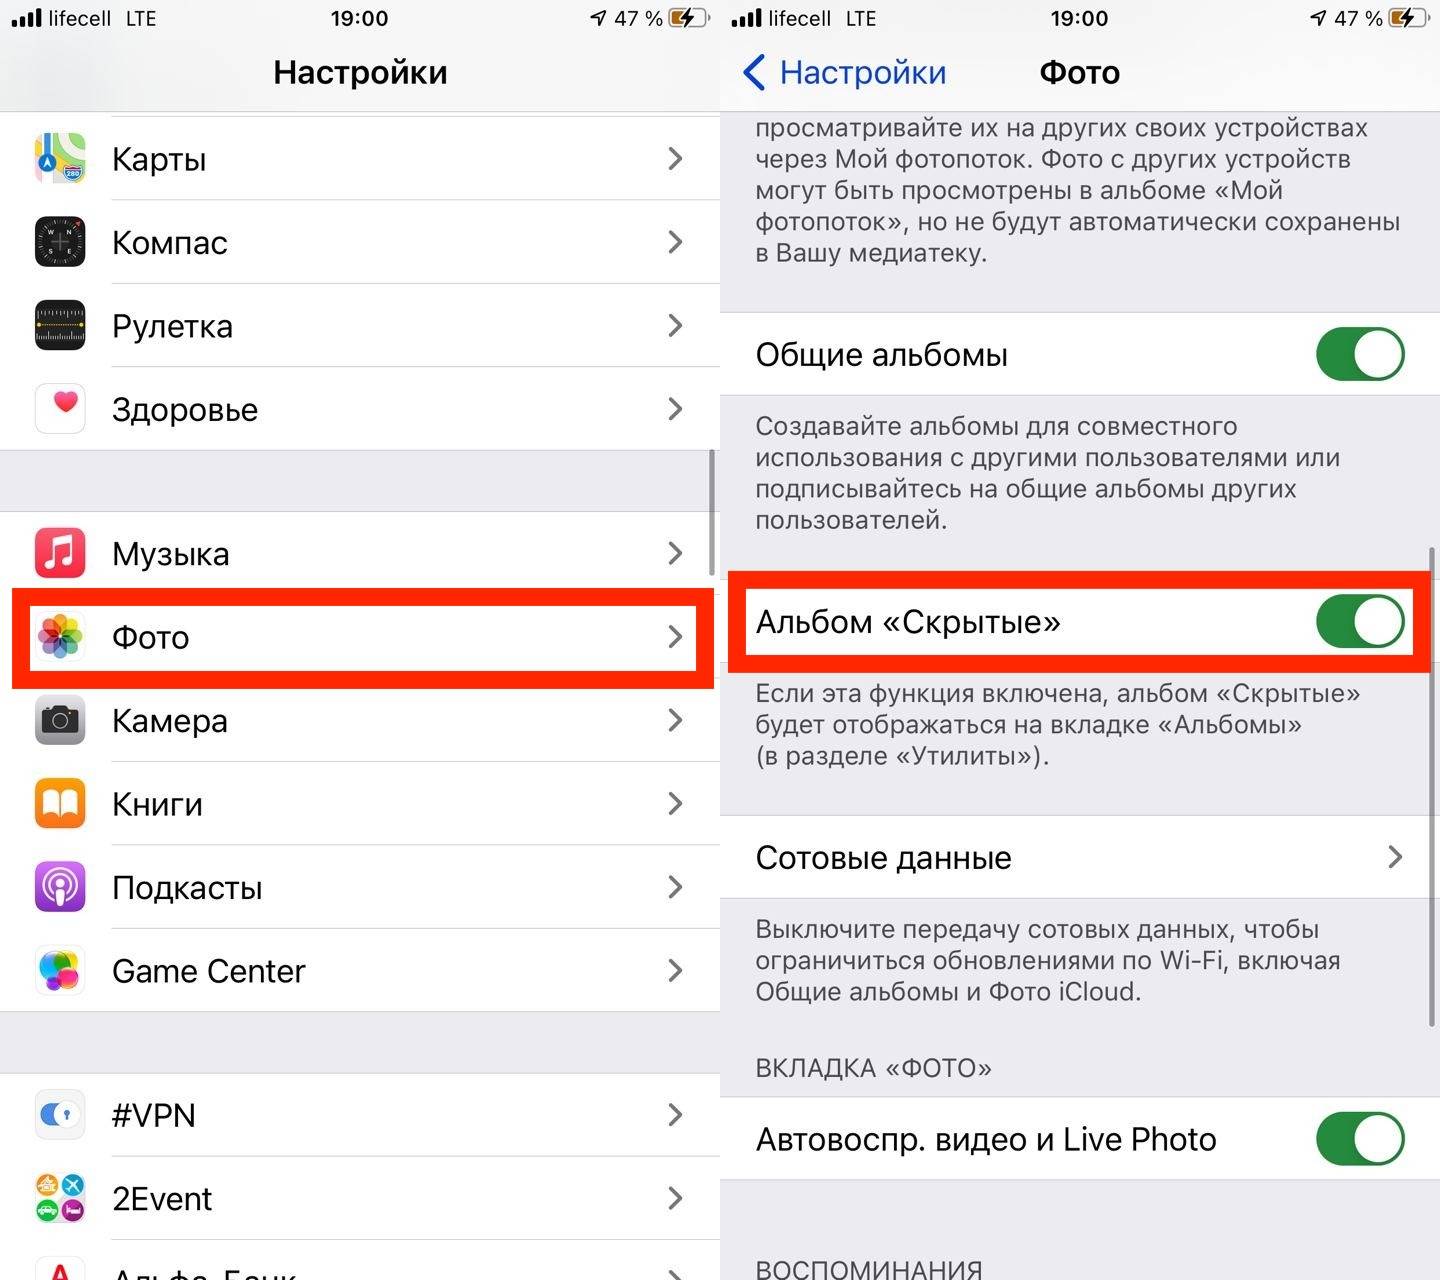 Поиск airpods и слежка в реальном времени: как изменилось приложение «локатор» в ios 15 | appleinsider.ru